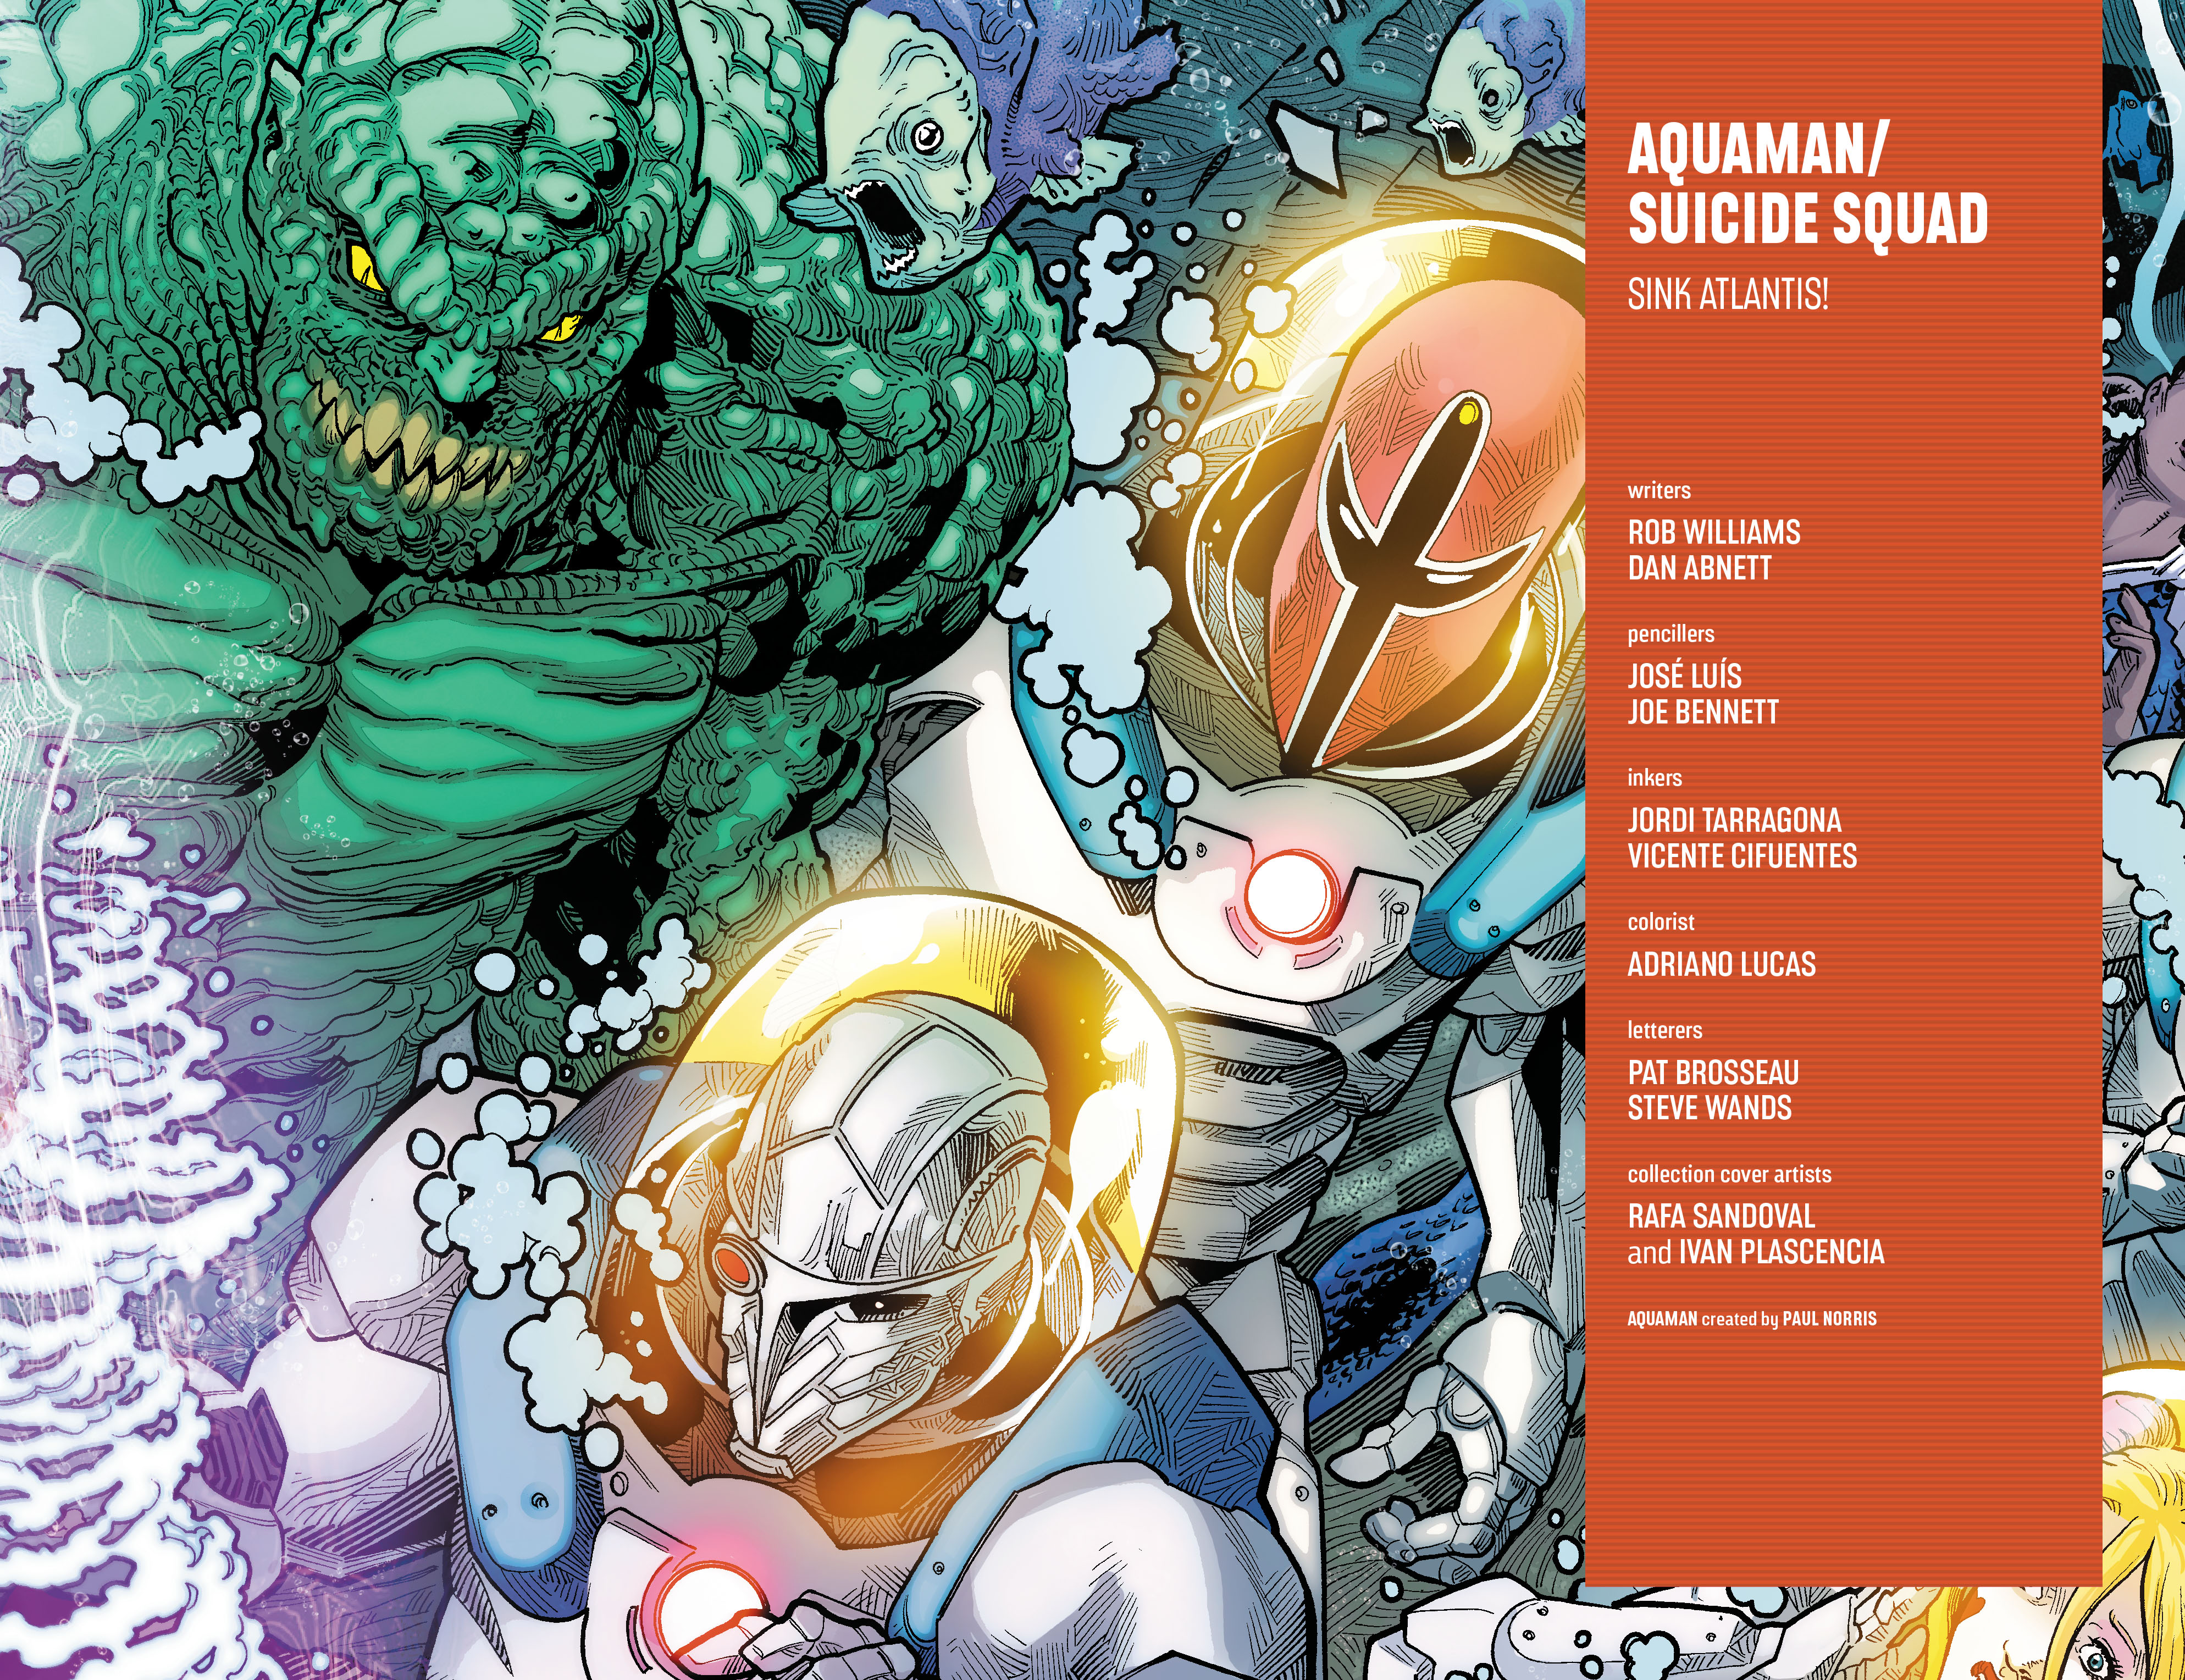 Read online Aquaman/Suicide Squad: Sink Atlantis! comic -  Issue # TPB - 3